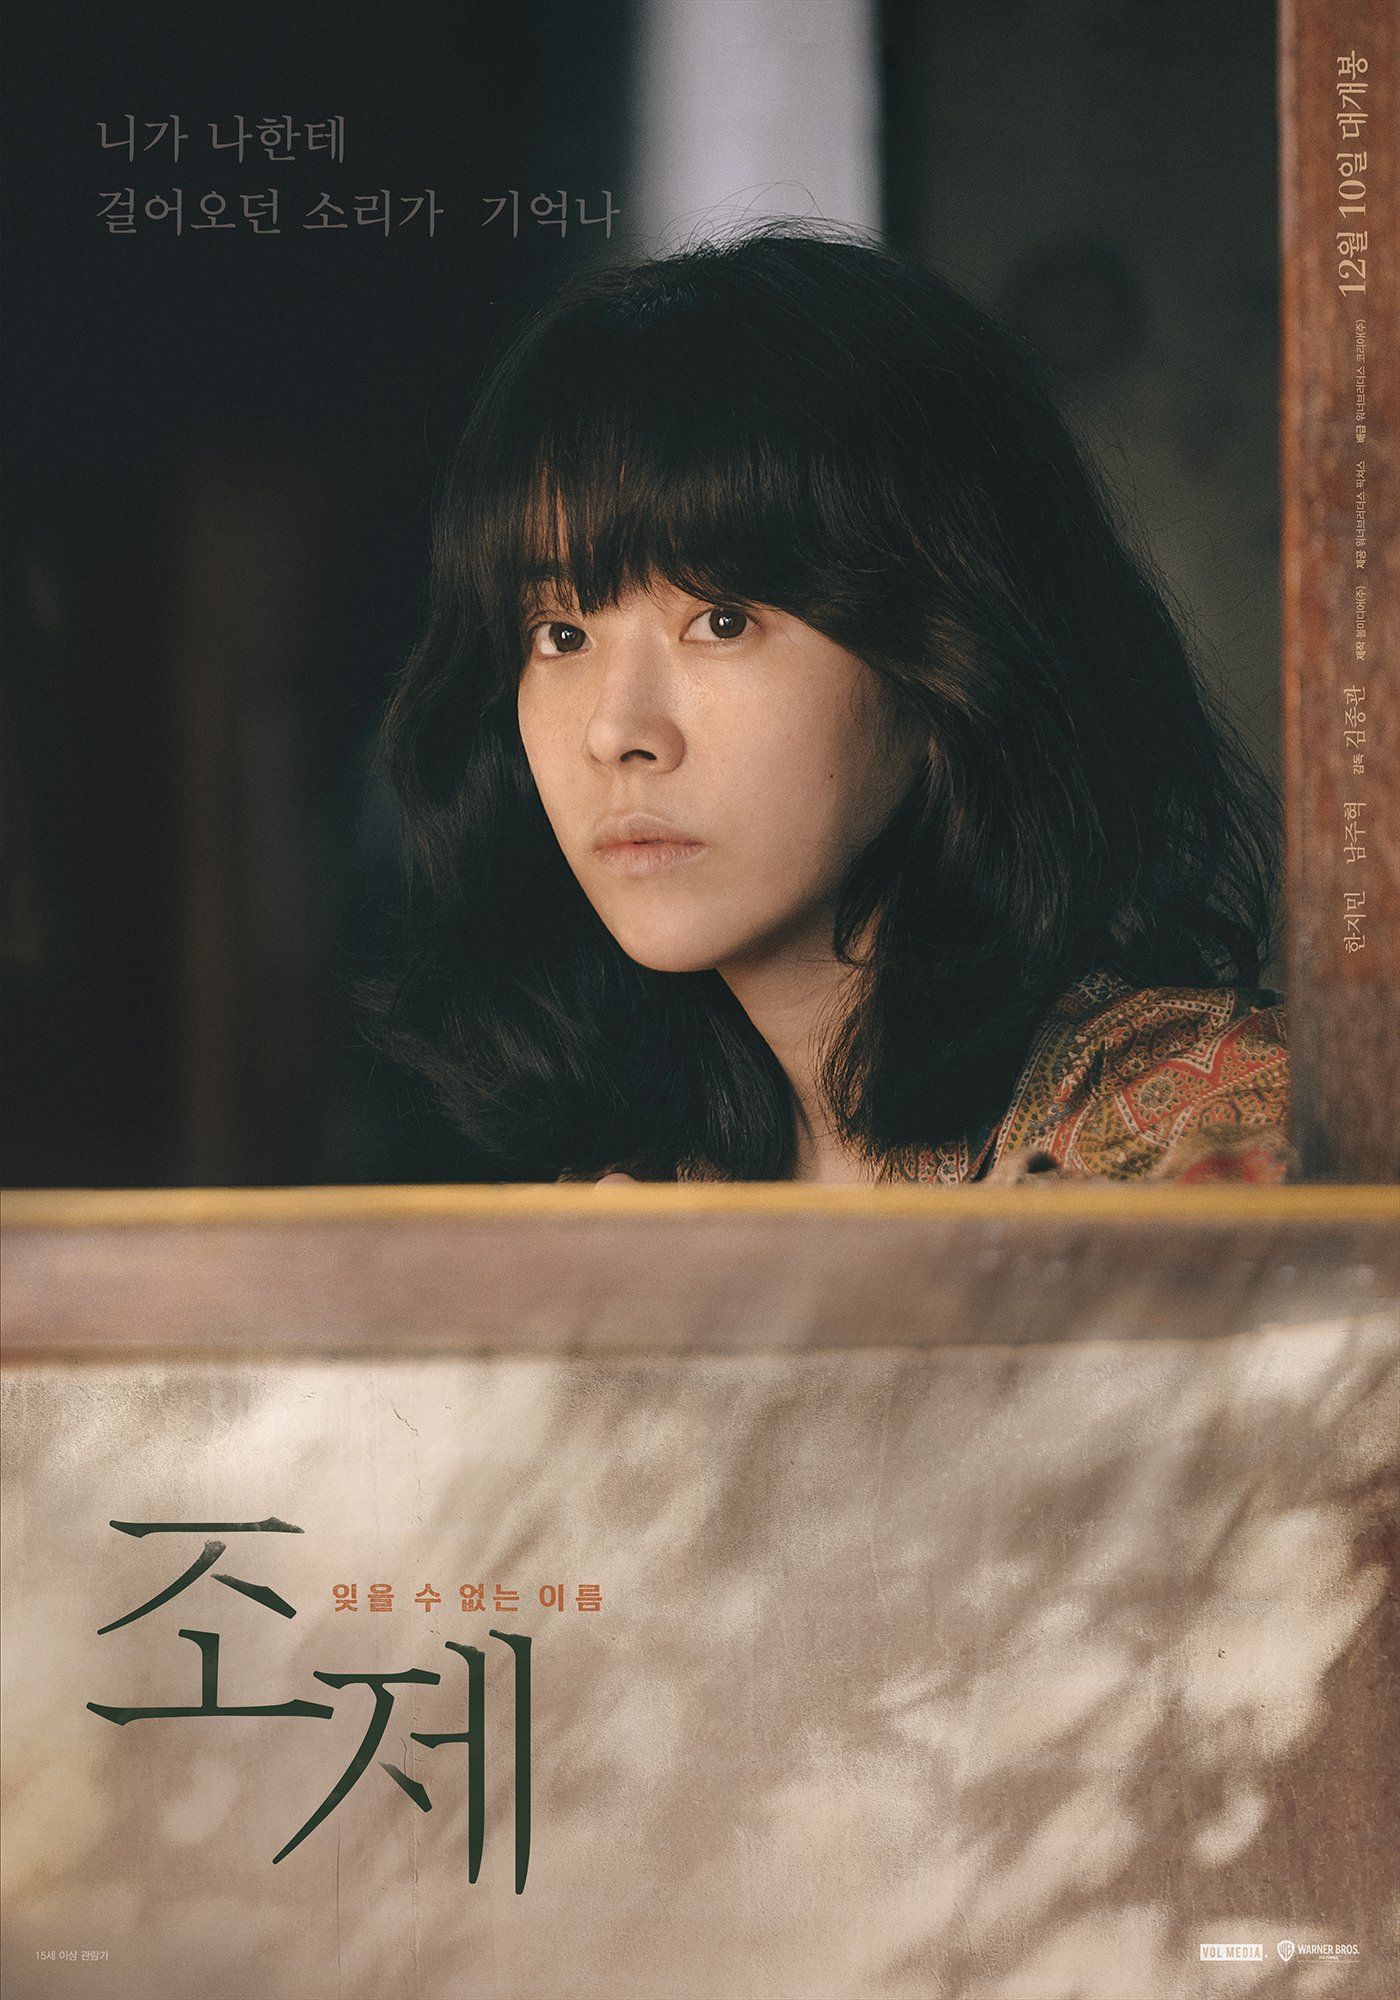 Han Ji Min dalam film "Josee".